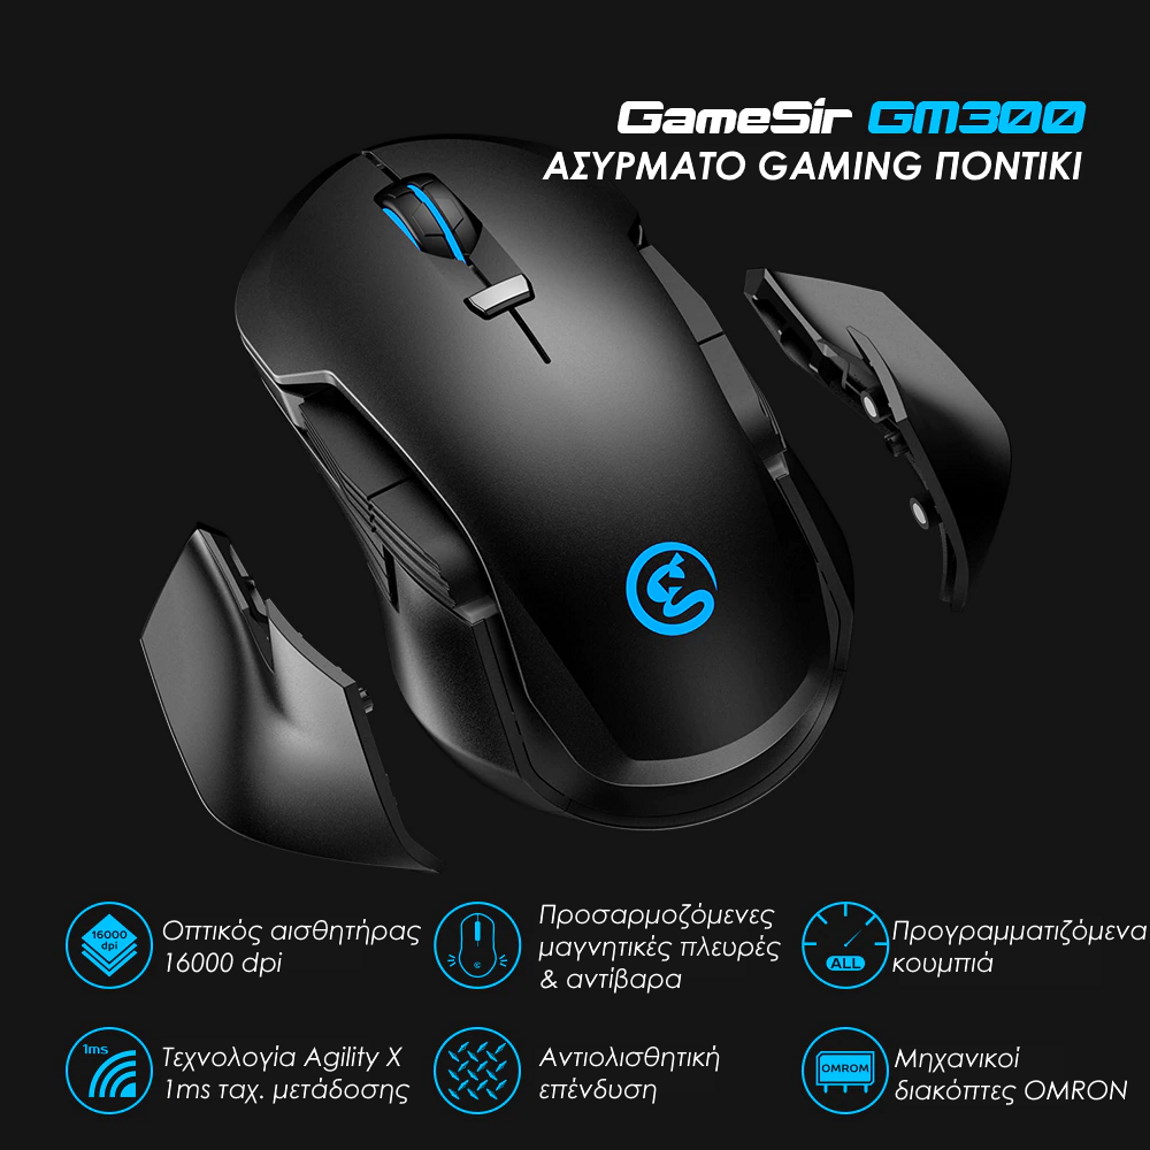 Gamesir GM300 gaming mouse χαρακτηριστικά